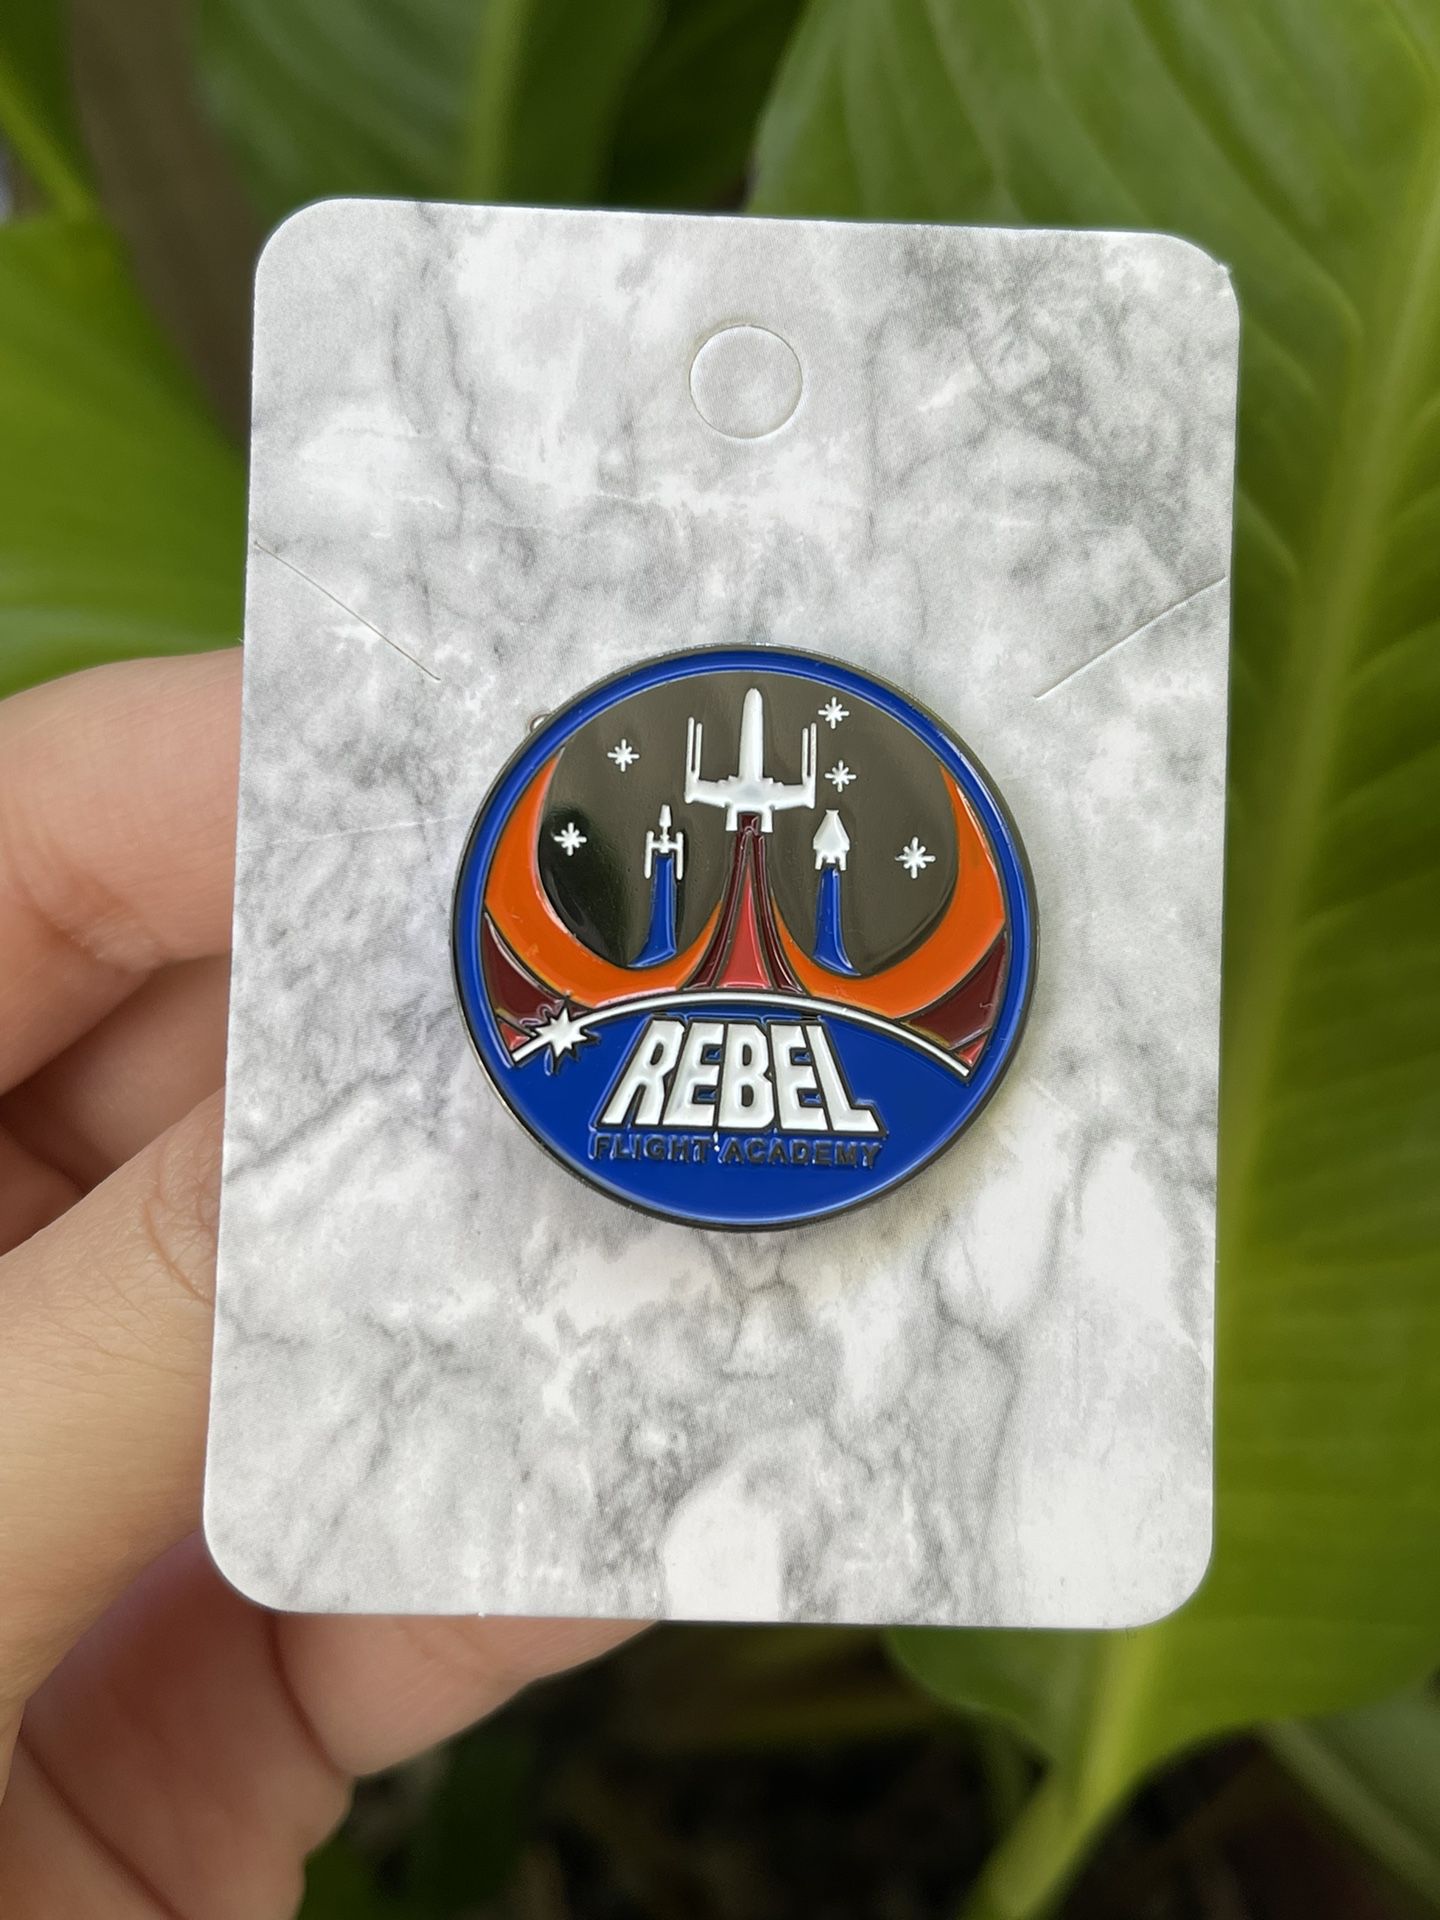 Rebel Flight Academy Star Wars Disney Fantasy Pin